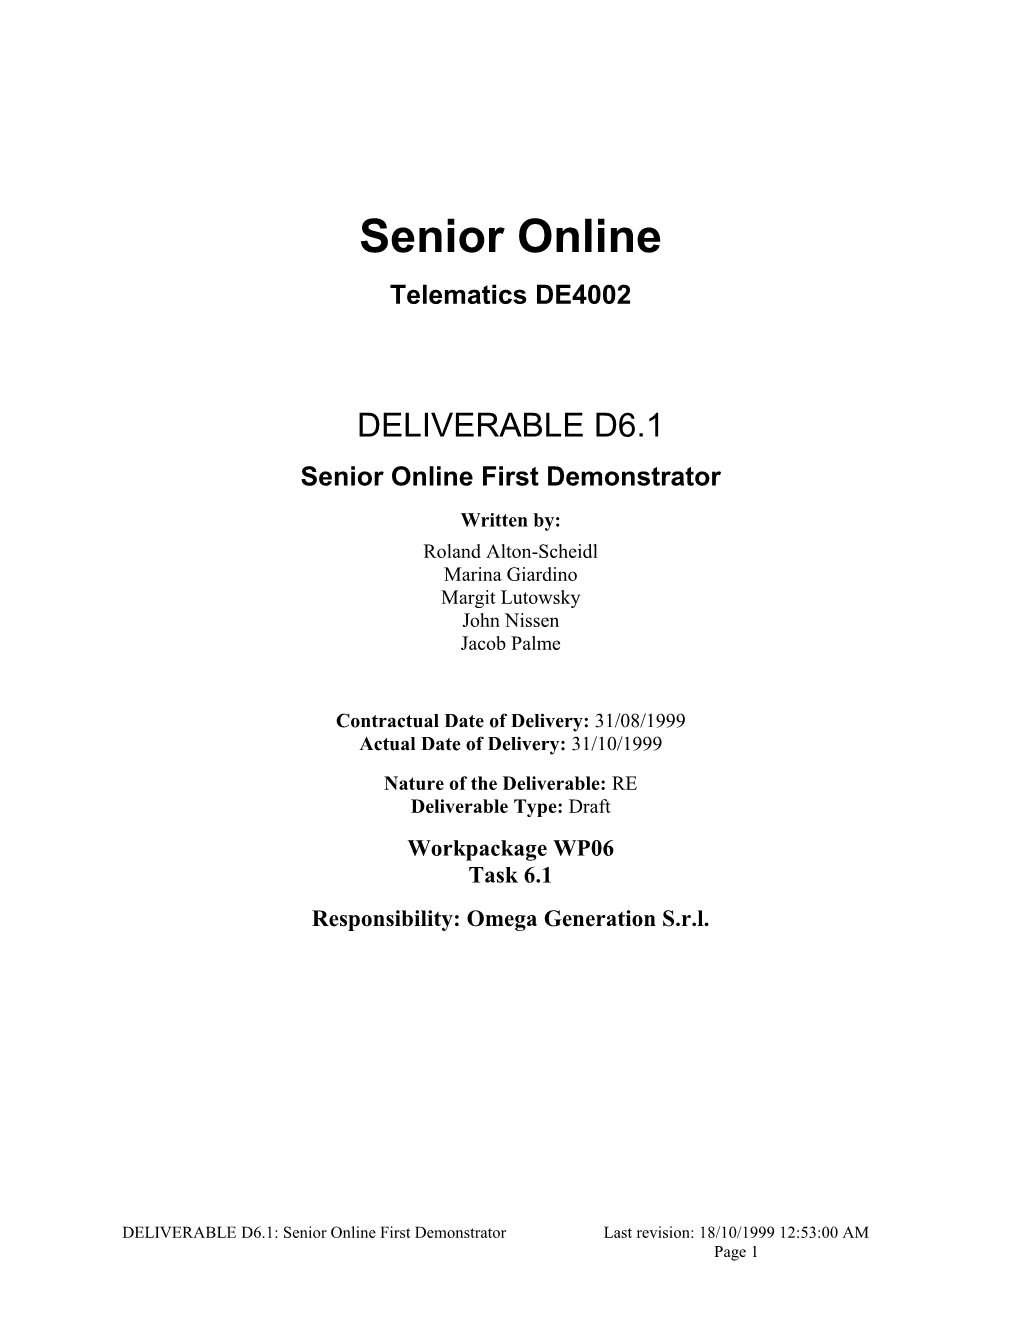 Senior Online First Demonstrator